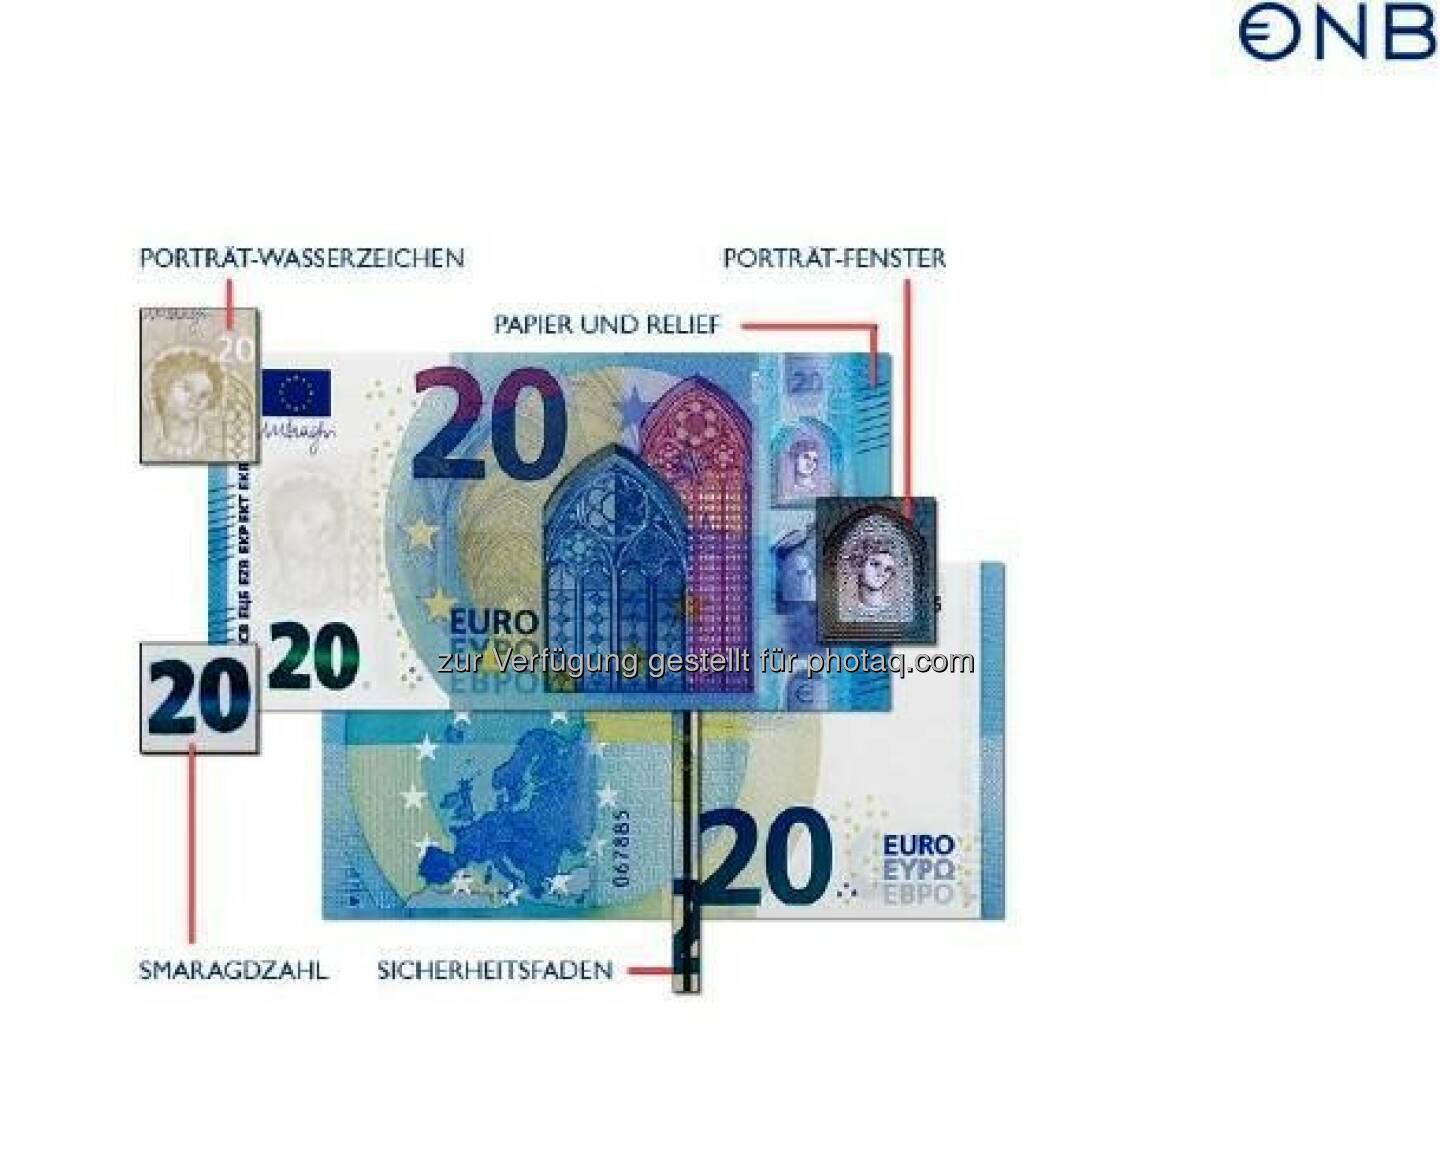 Neue 20-Euro-Banknote mit Fenster für den Durchblick : Die Echtheitsprüfung kann wie gewohnt mit „Fühlen – Sehen – Kippen“ ohne technische Hilfsmittel durchgeführt werden. Die bekannten Sicherheitsmerkmale der bereits ausgegebenen 5- und 10-Euro-Banknoten – wie die Smaragdzahl, das Porträt-Wasserzeichen und der Sicherheitsfaden – finden sich selbstverständlich auch auf der neuen 20-Euro-Banknote : © OeNB